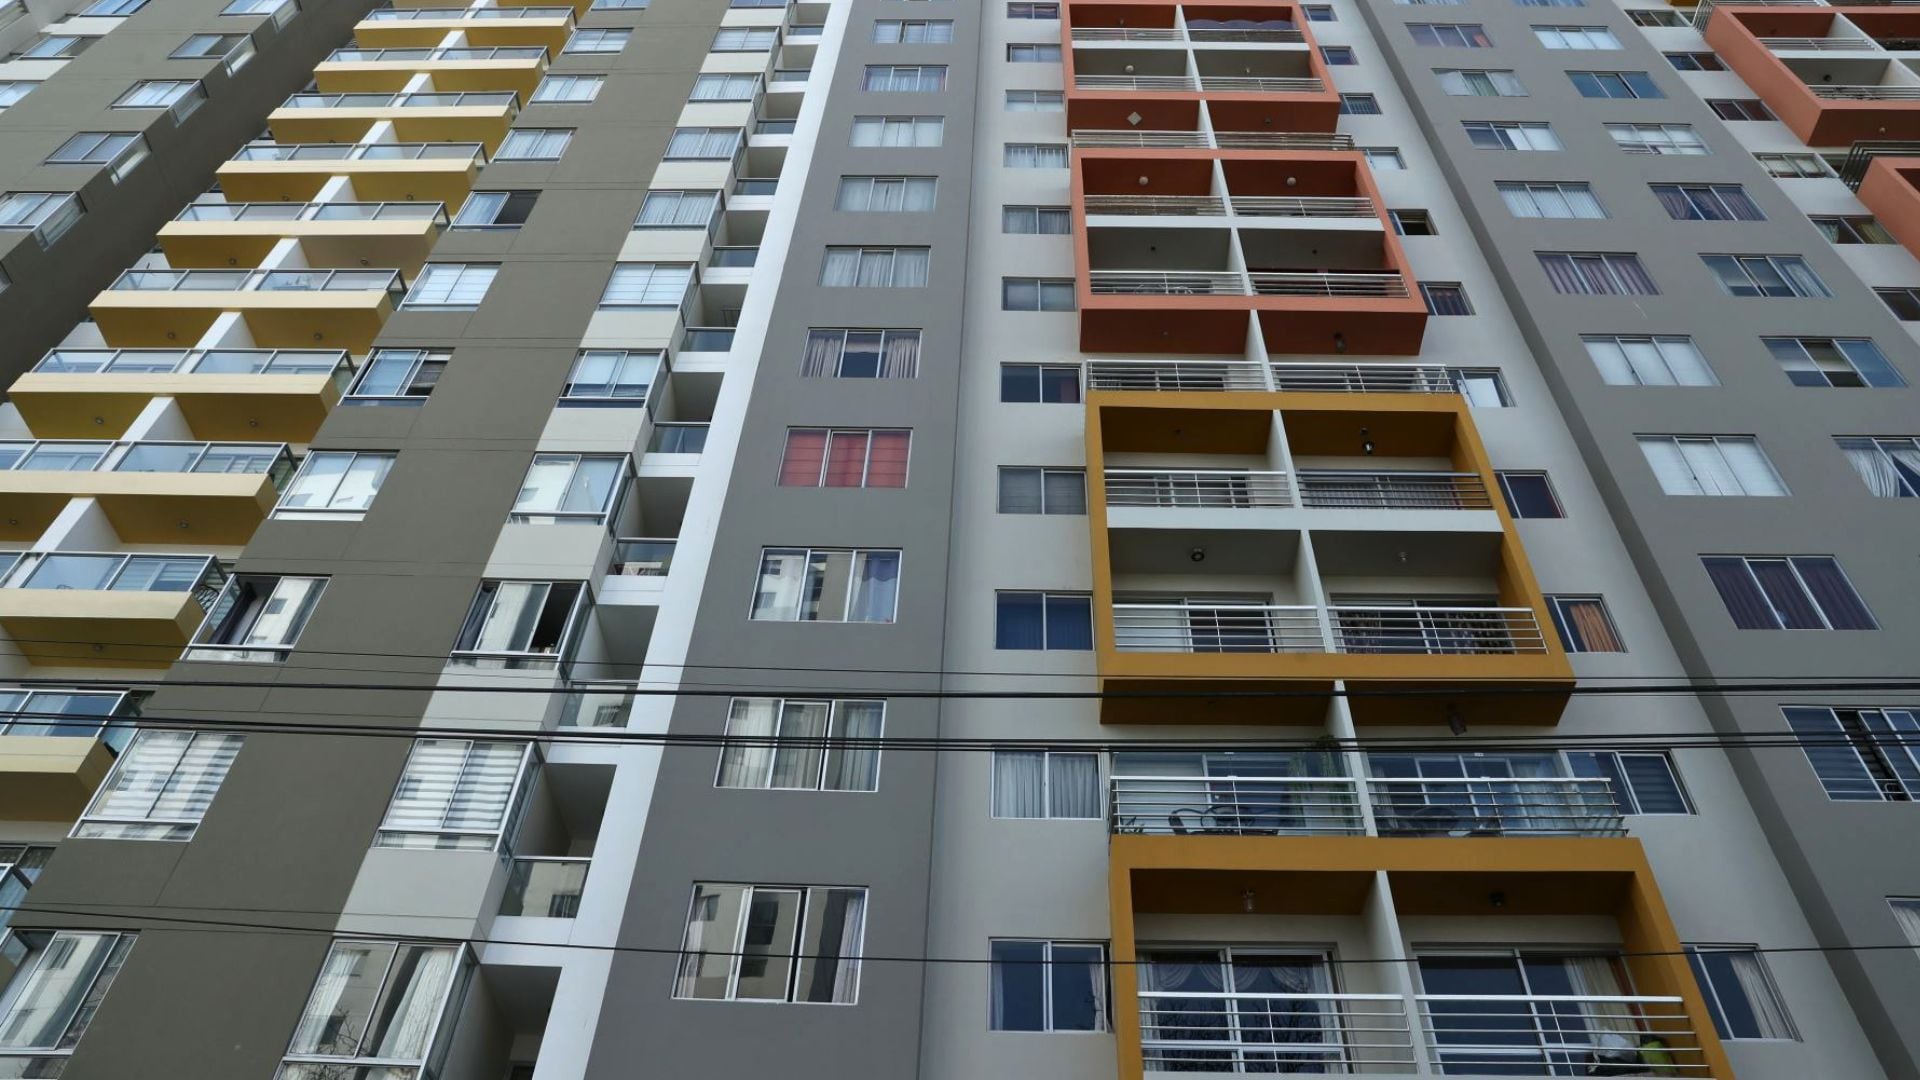 Alquiler de viviendas en Perú: ¿Cómo evitar inquilinos morosos?